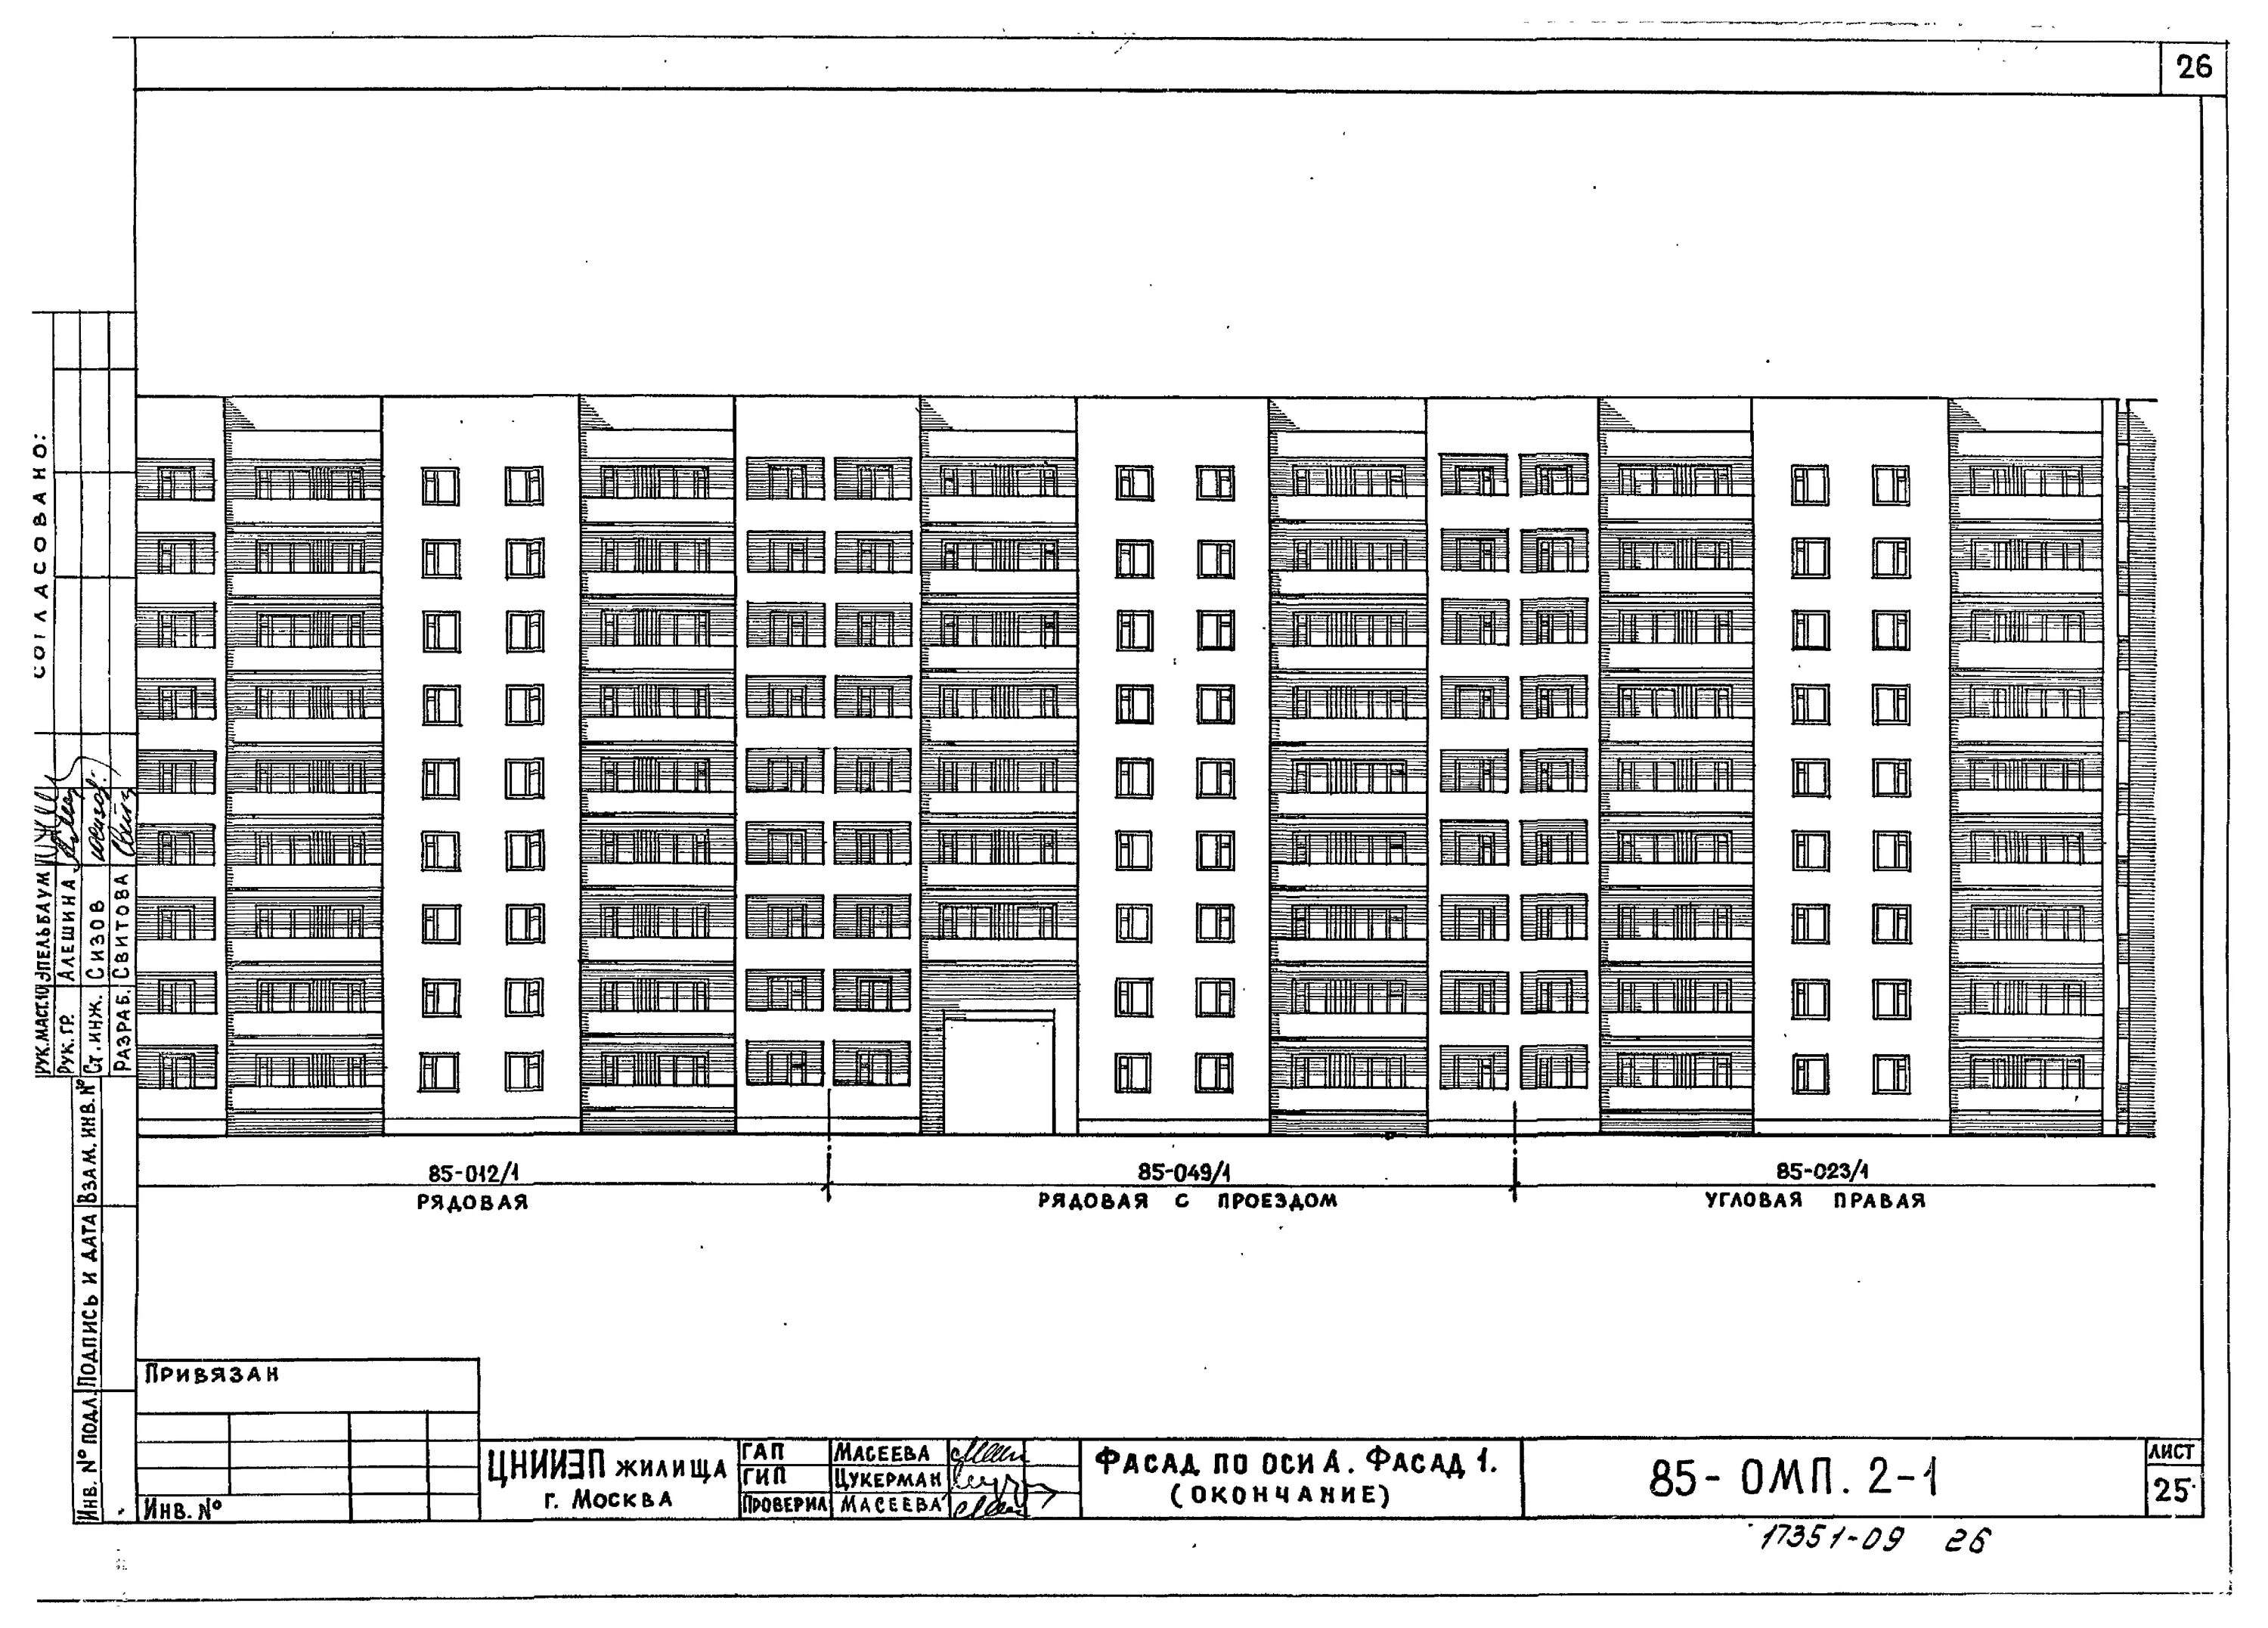 Схема девятиэтажного панельного дома. Схема 9 этажного панельного дома. Чертеж девятиэтажного панельного дома. Схема панельного дома 9 этажей 1978 года.